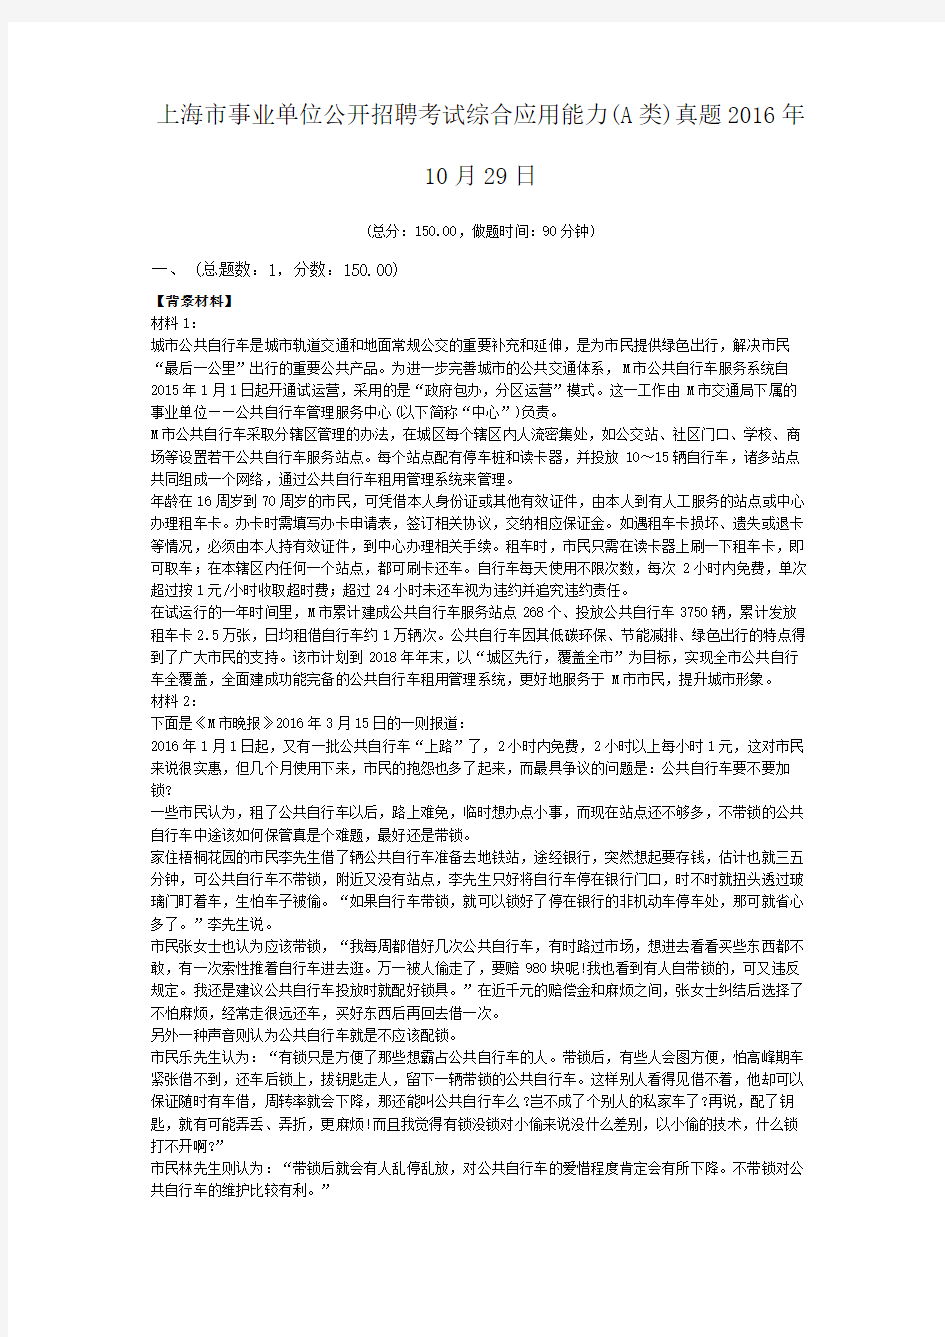 上海市事业单位公开招聘考试综合应用能力(A类)真题2016年10月29日